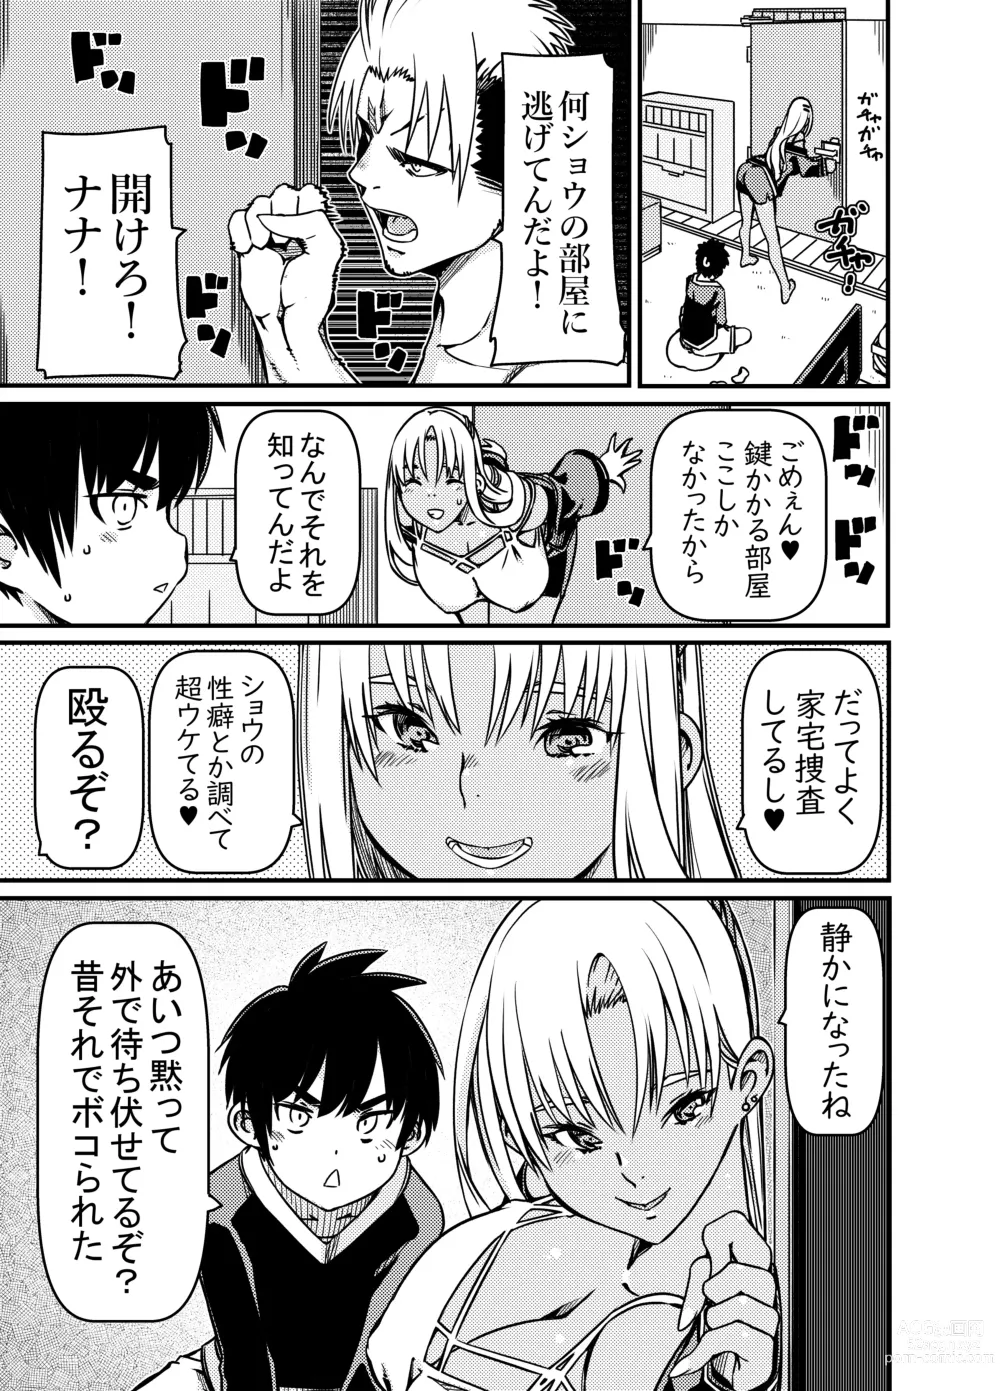 Page 10 of doujinshi Aniki no Kanojo no Kuro Gal to Heya ni Tojikomeraretan dakedo?